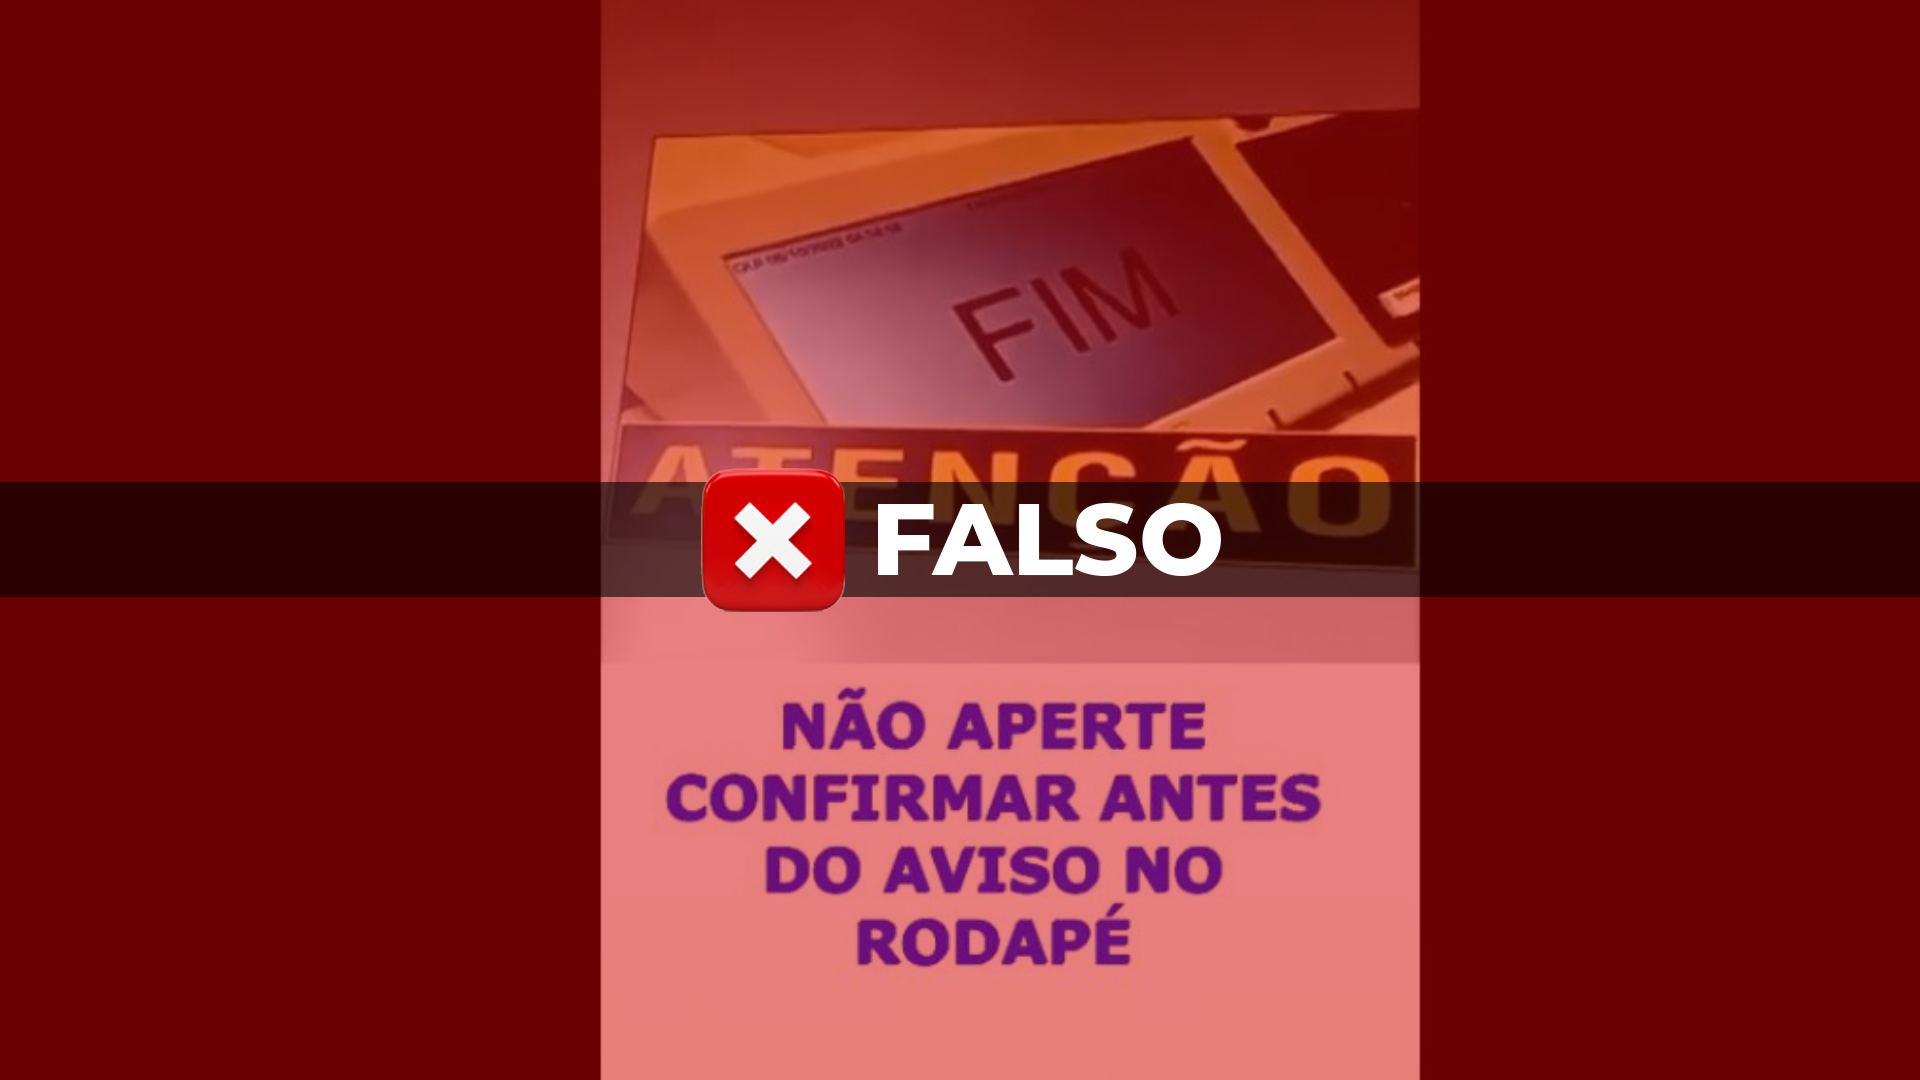 decide excluir vídeos com fake news sobre urna eletrônica - País -  Diário de Canoas